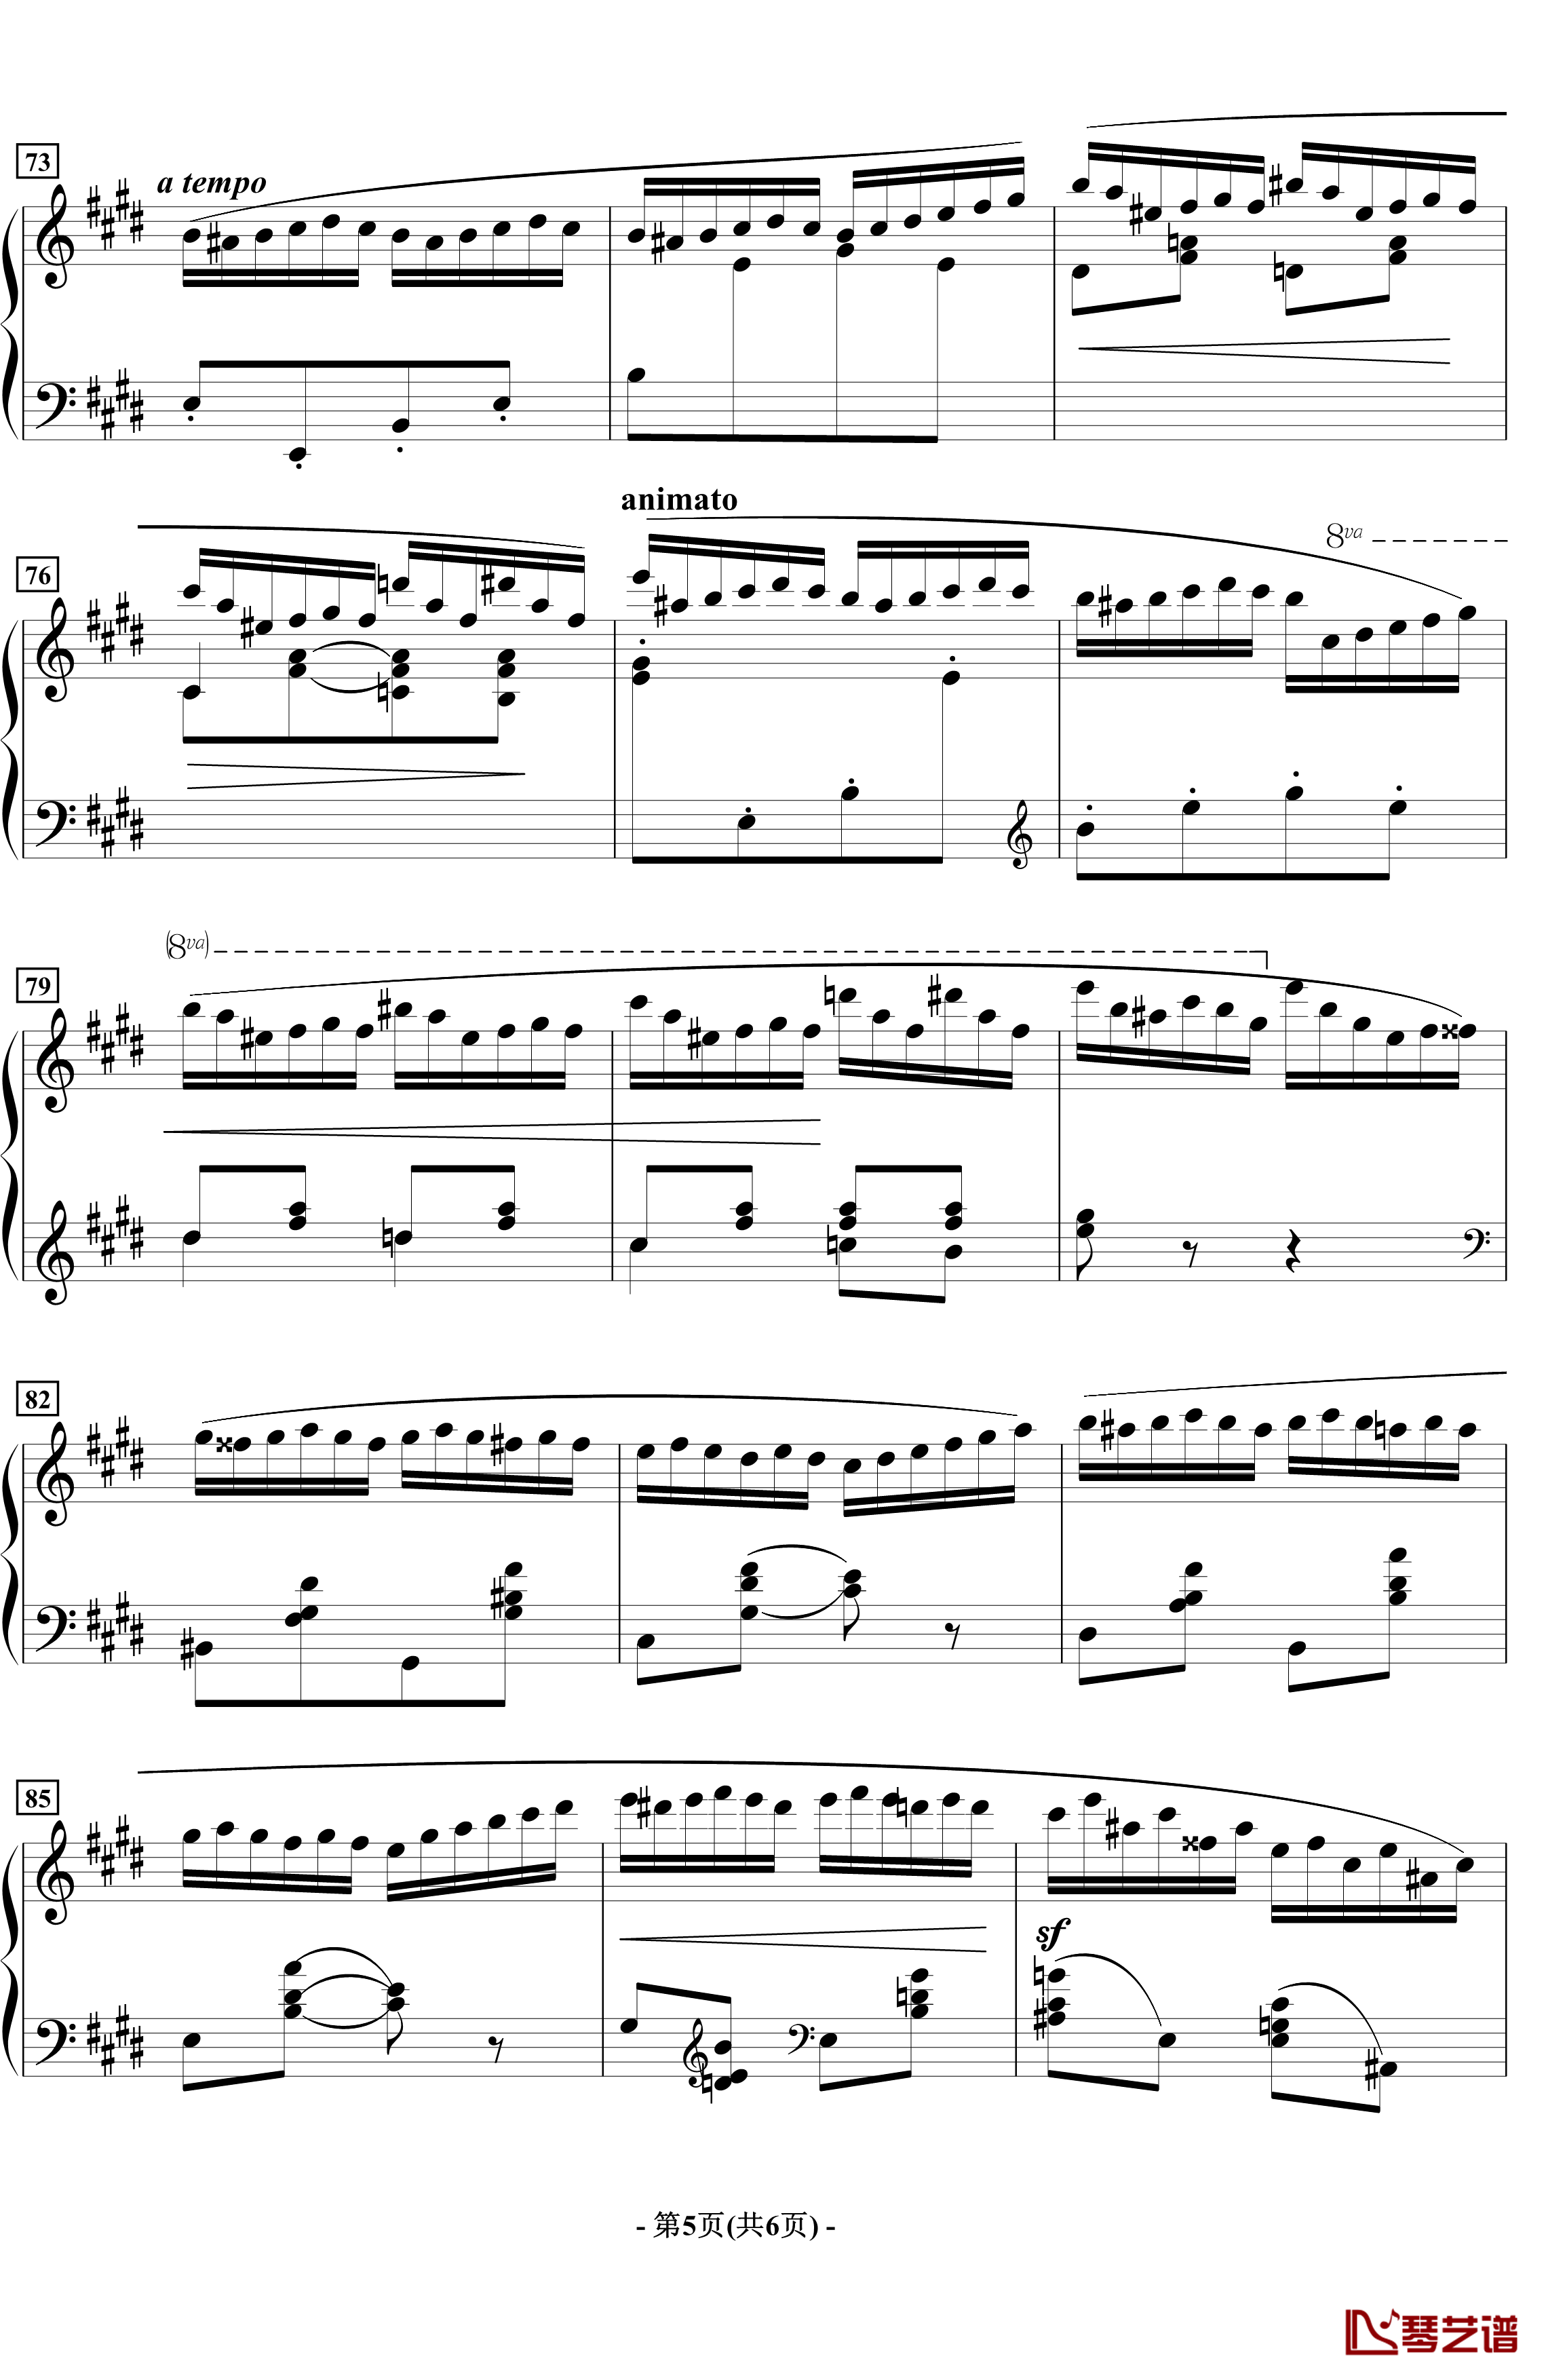 蝴蝶钢琴谱-音乐会练习曲-拉瓦列5